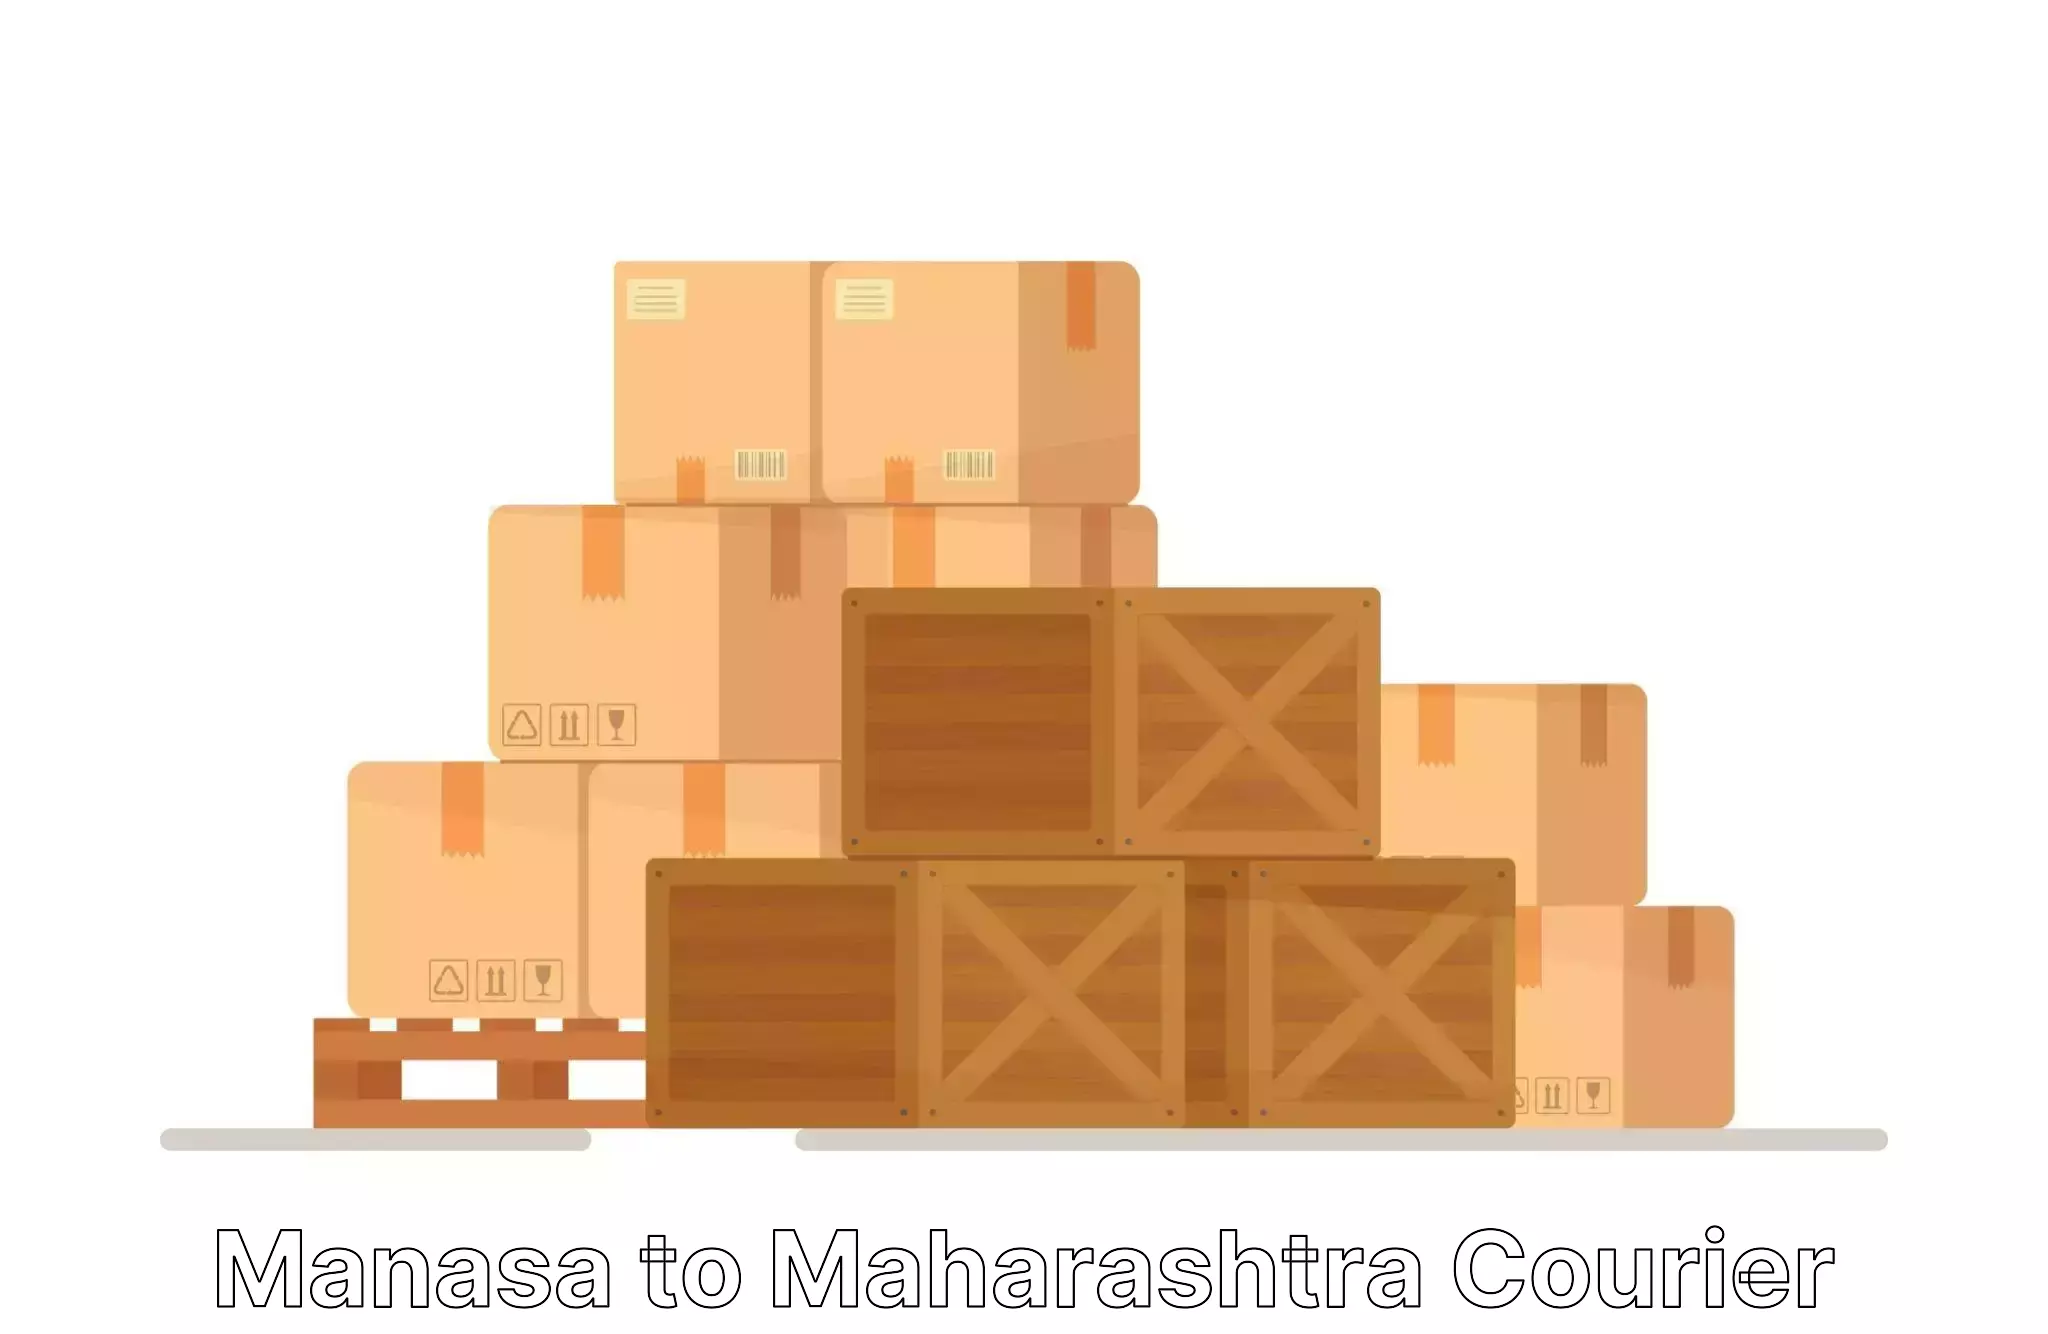 Moving and handling services Manasa to Ahmednagar